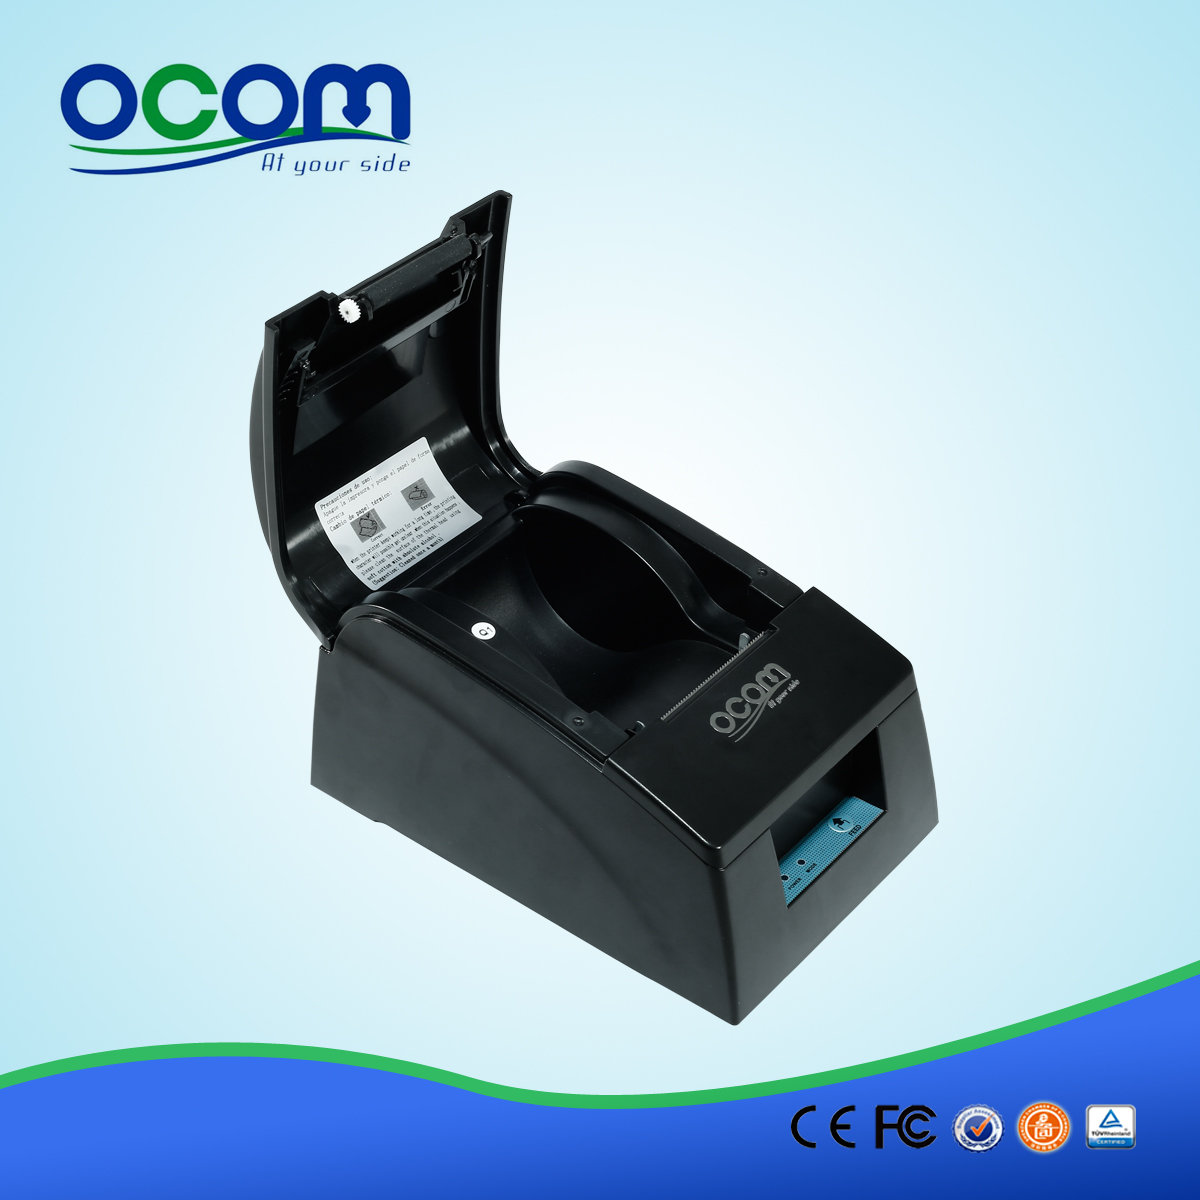 Posición de China Impresora térmica de recibos OCPP-585